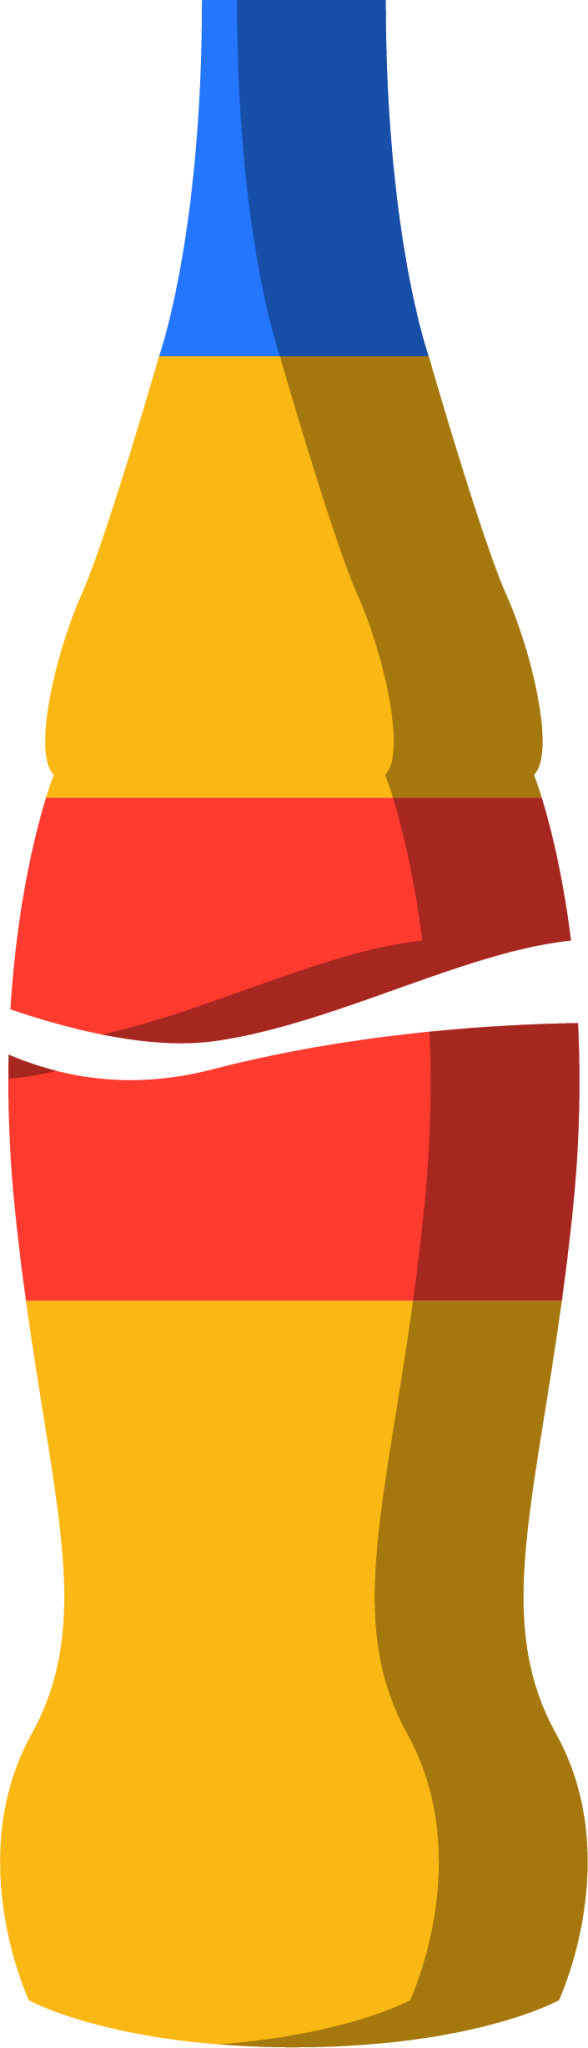 coke bottle illustration